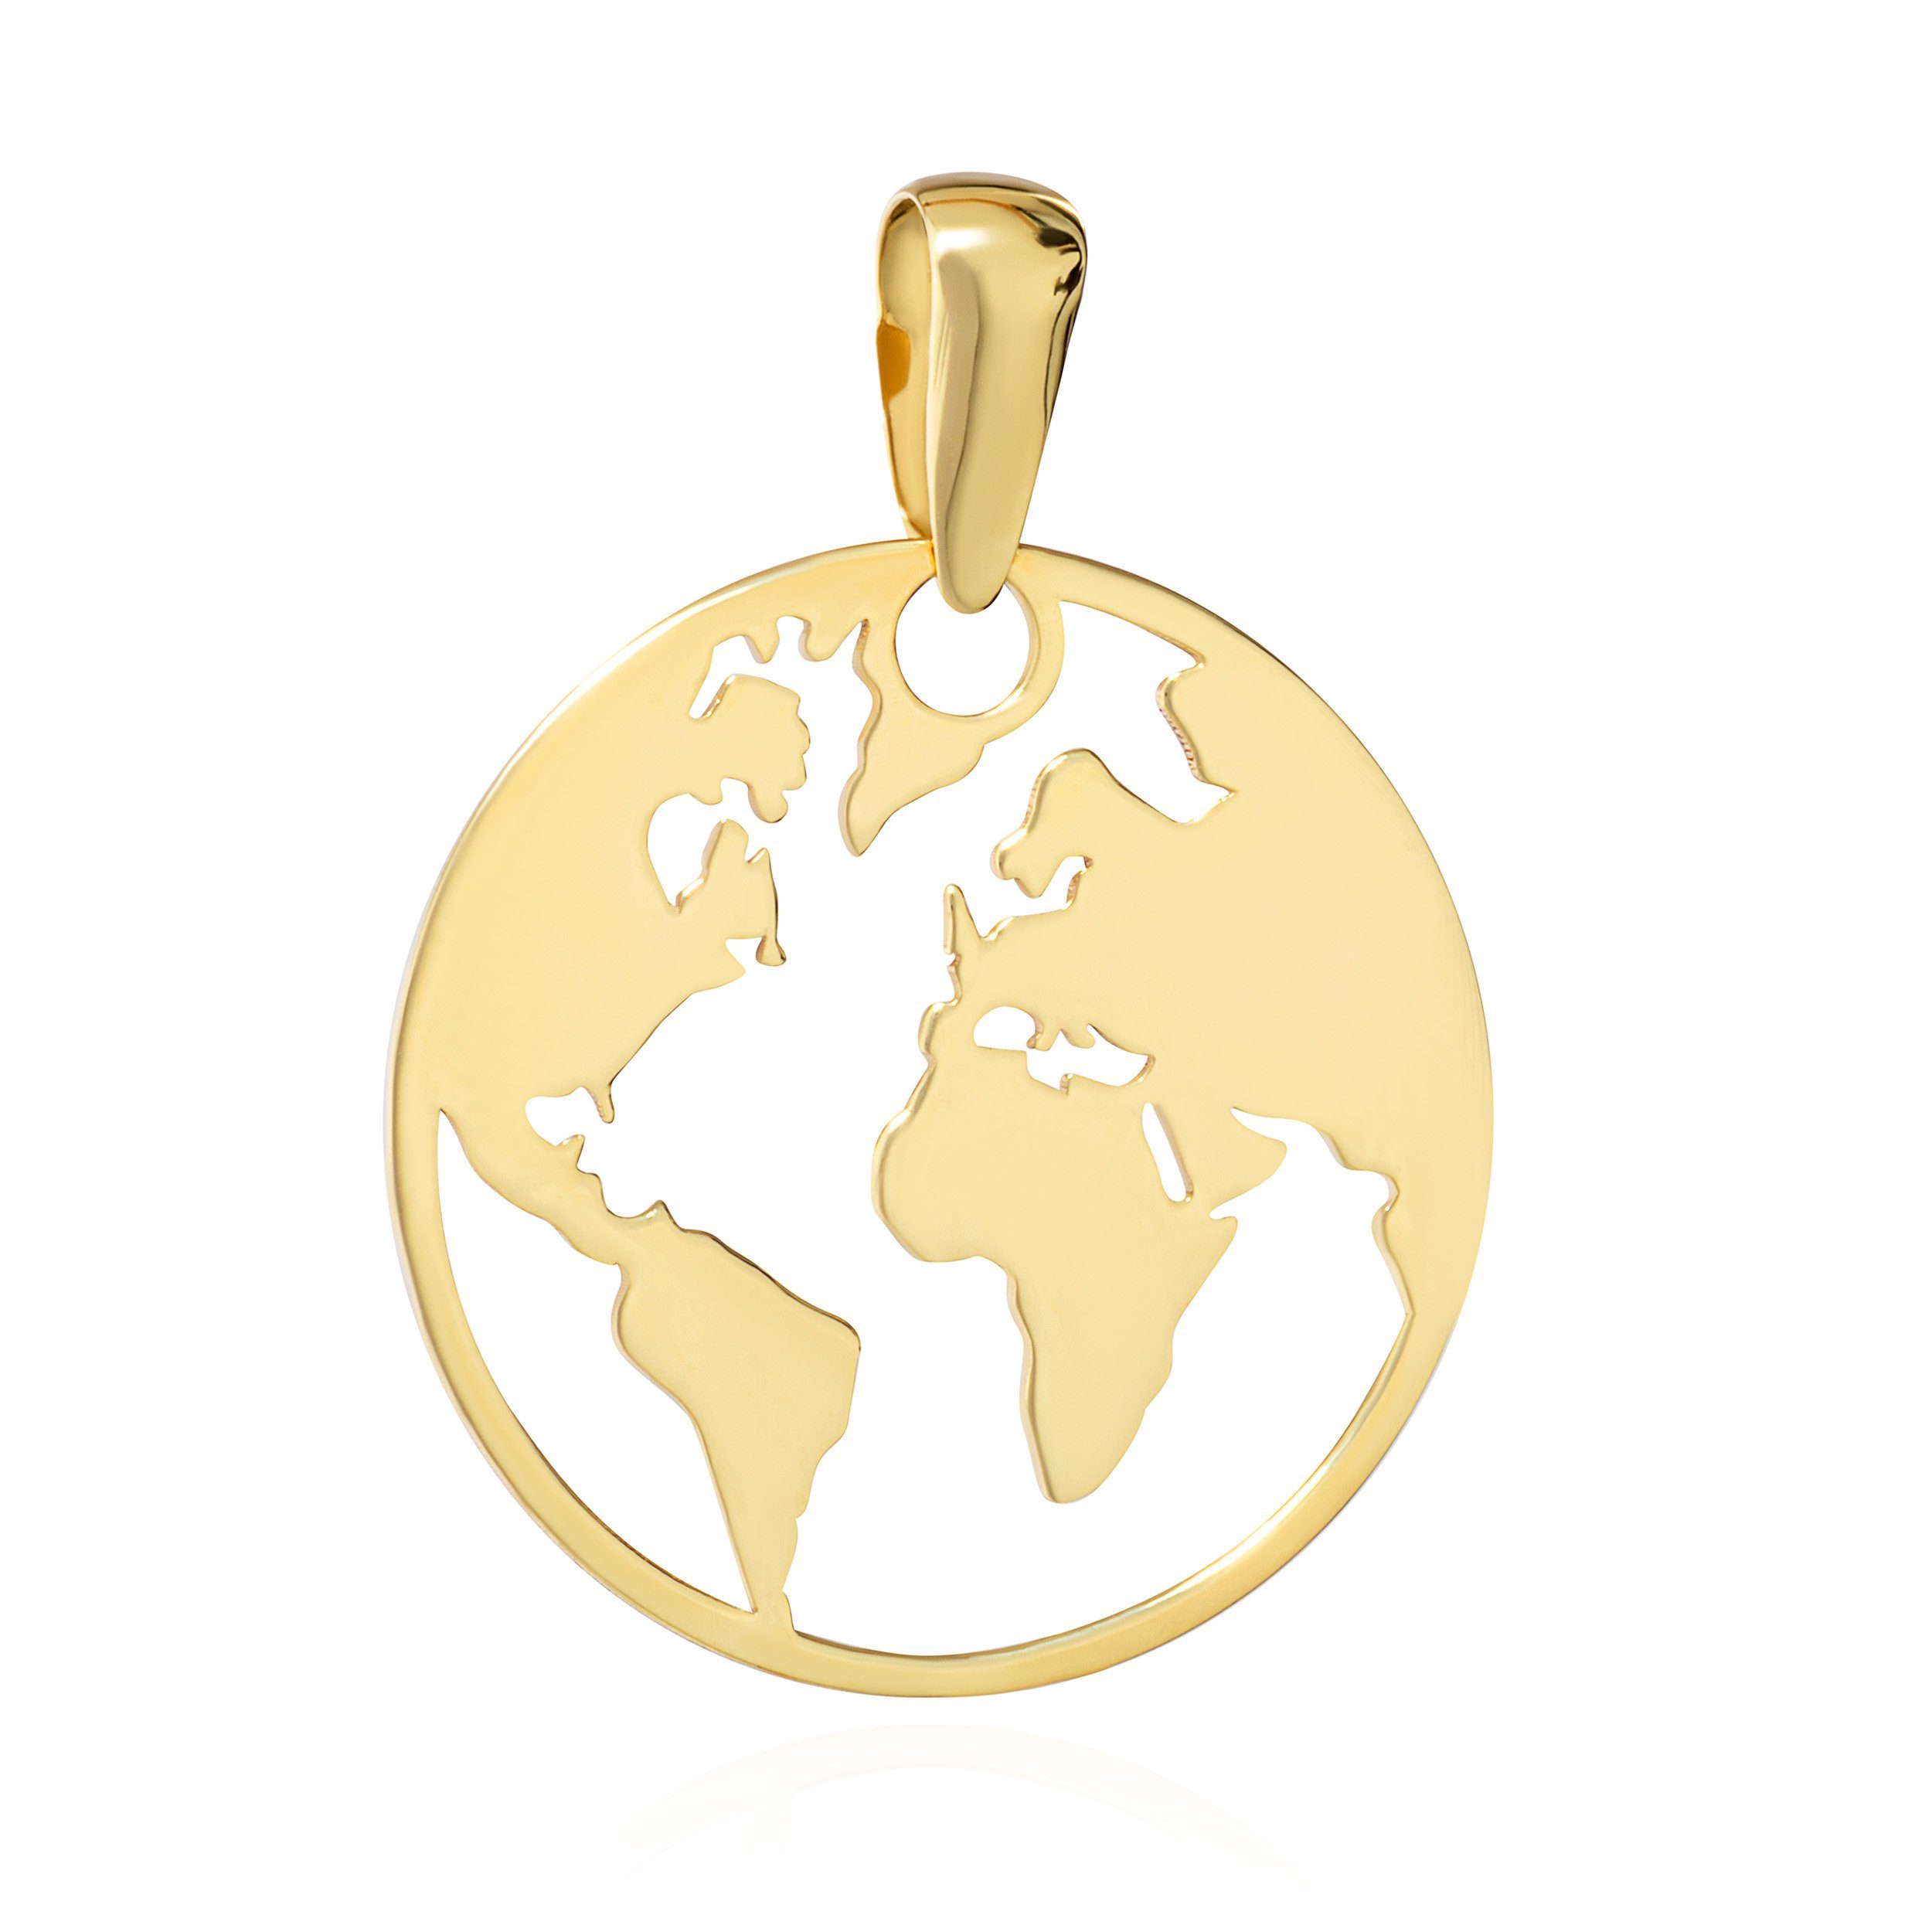 Welt Kettenanhänger Karat Weltkugel Gelb Gold 333 mm NKlaus Kettenanhänger 8 16 Globus Atlas